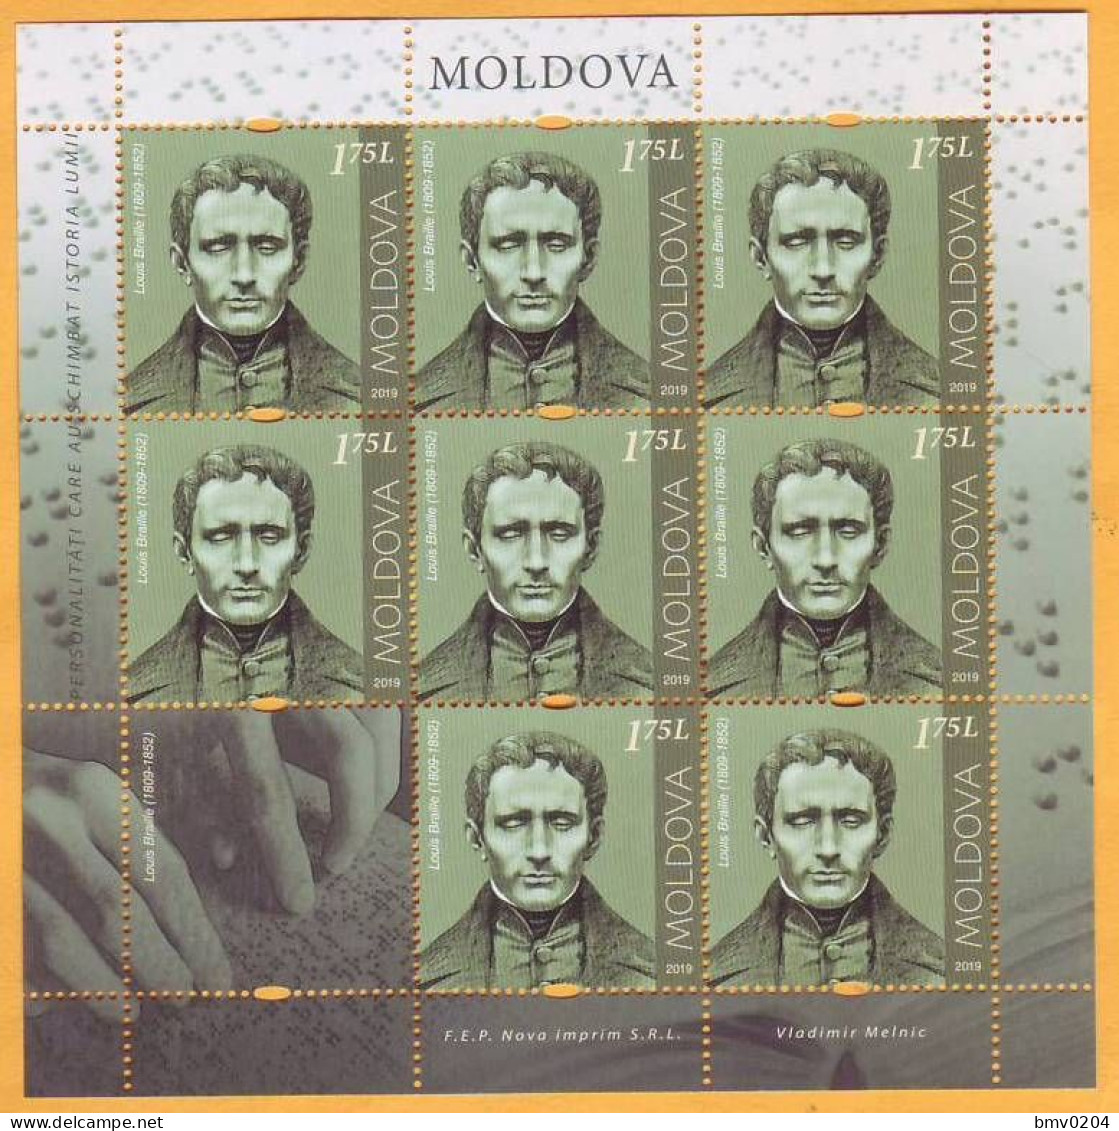 2019 Moldova Moldavie Sheet  Louis Braille  France Mint - Moldova